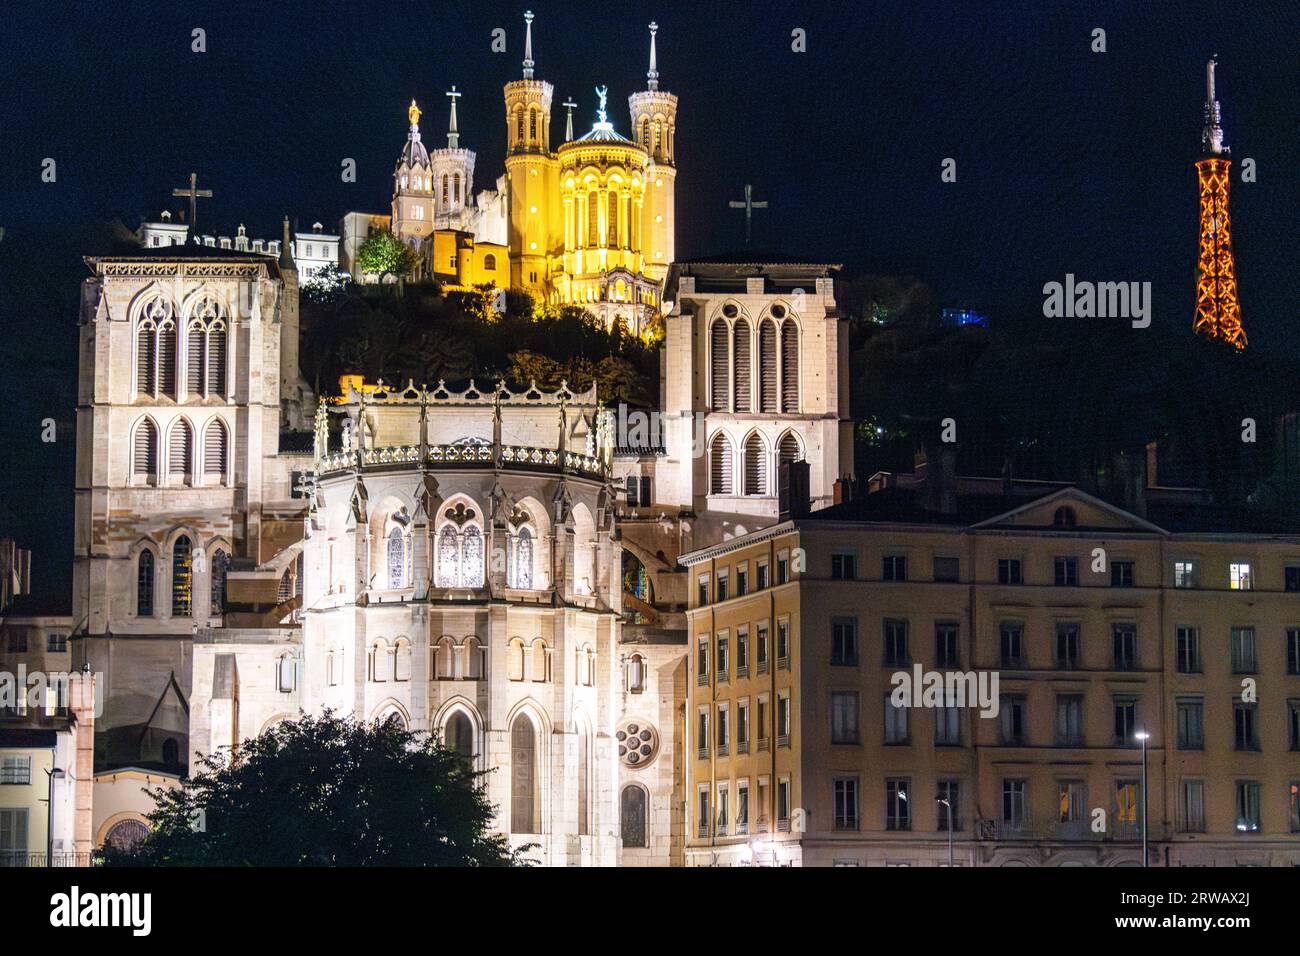 Nächtlicher Blick über die Saone in Richtung Altstadt von Lyon und 2 Kathedralen, St. Jean Baptiste und Basilika Saint Jean Baptiste. Stockfoto